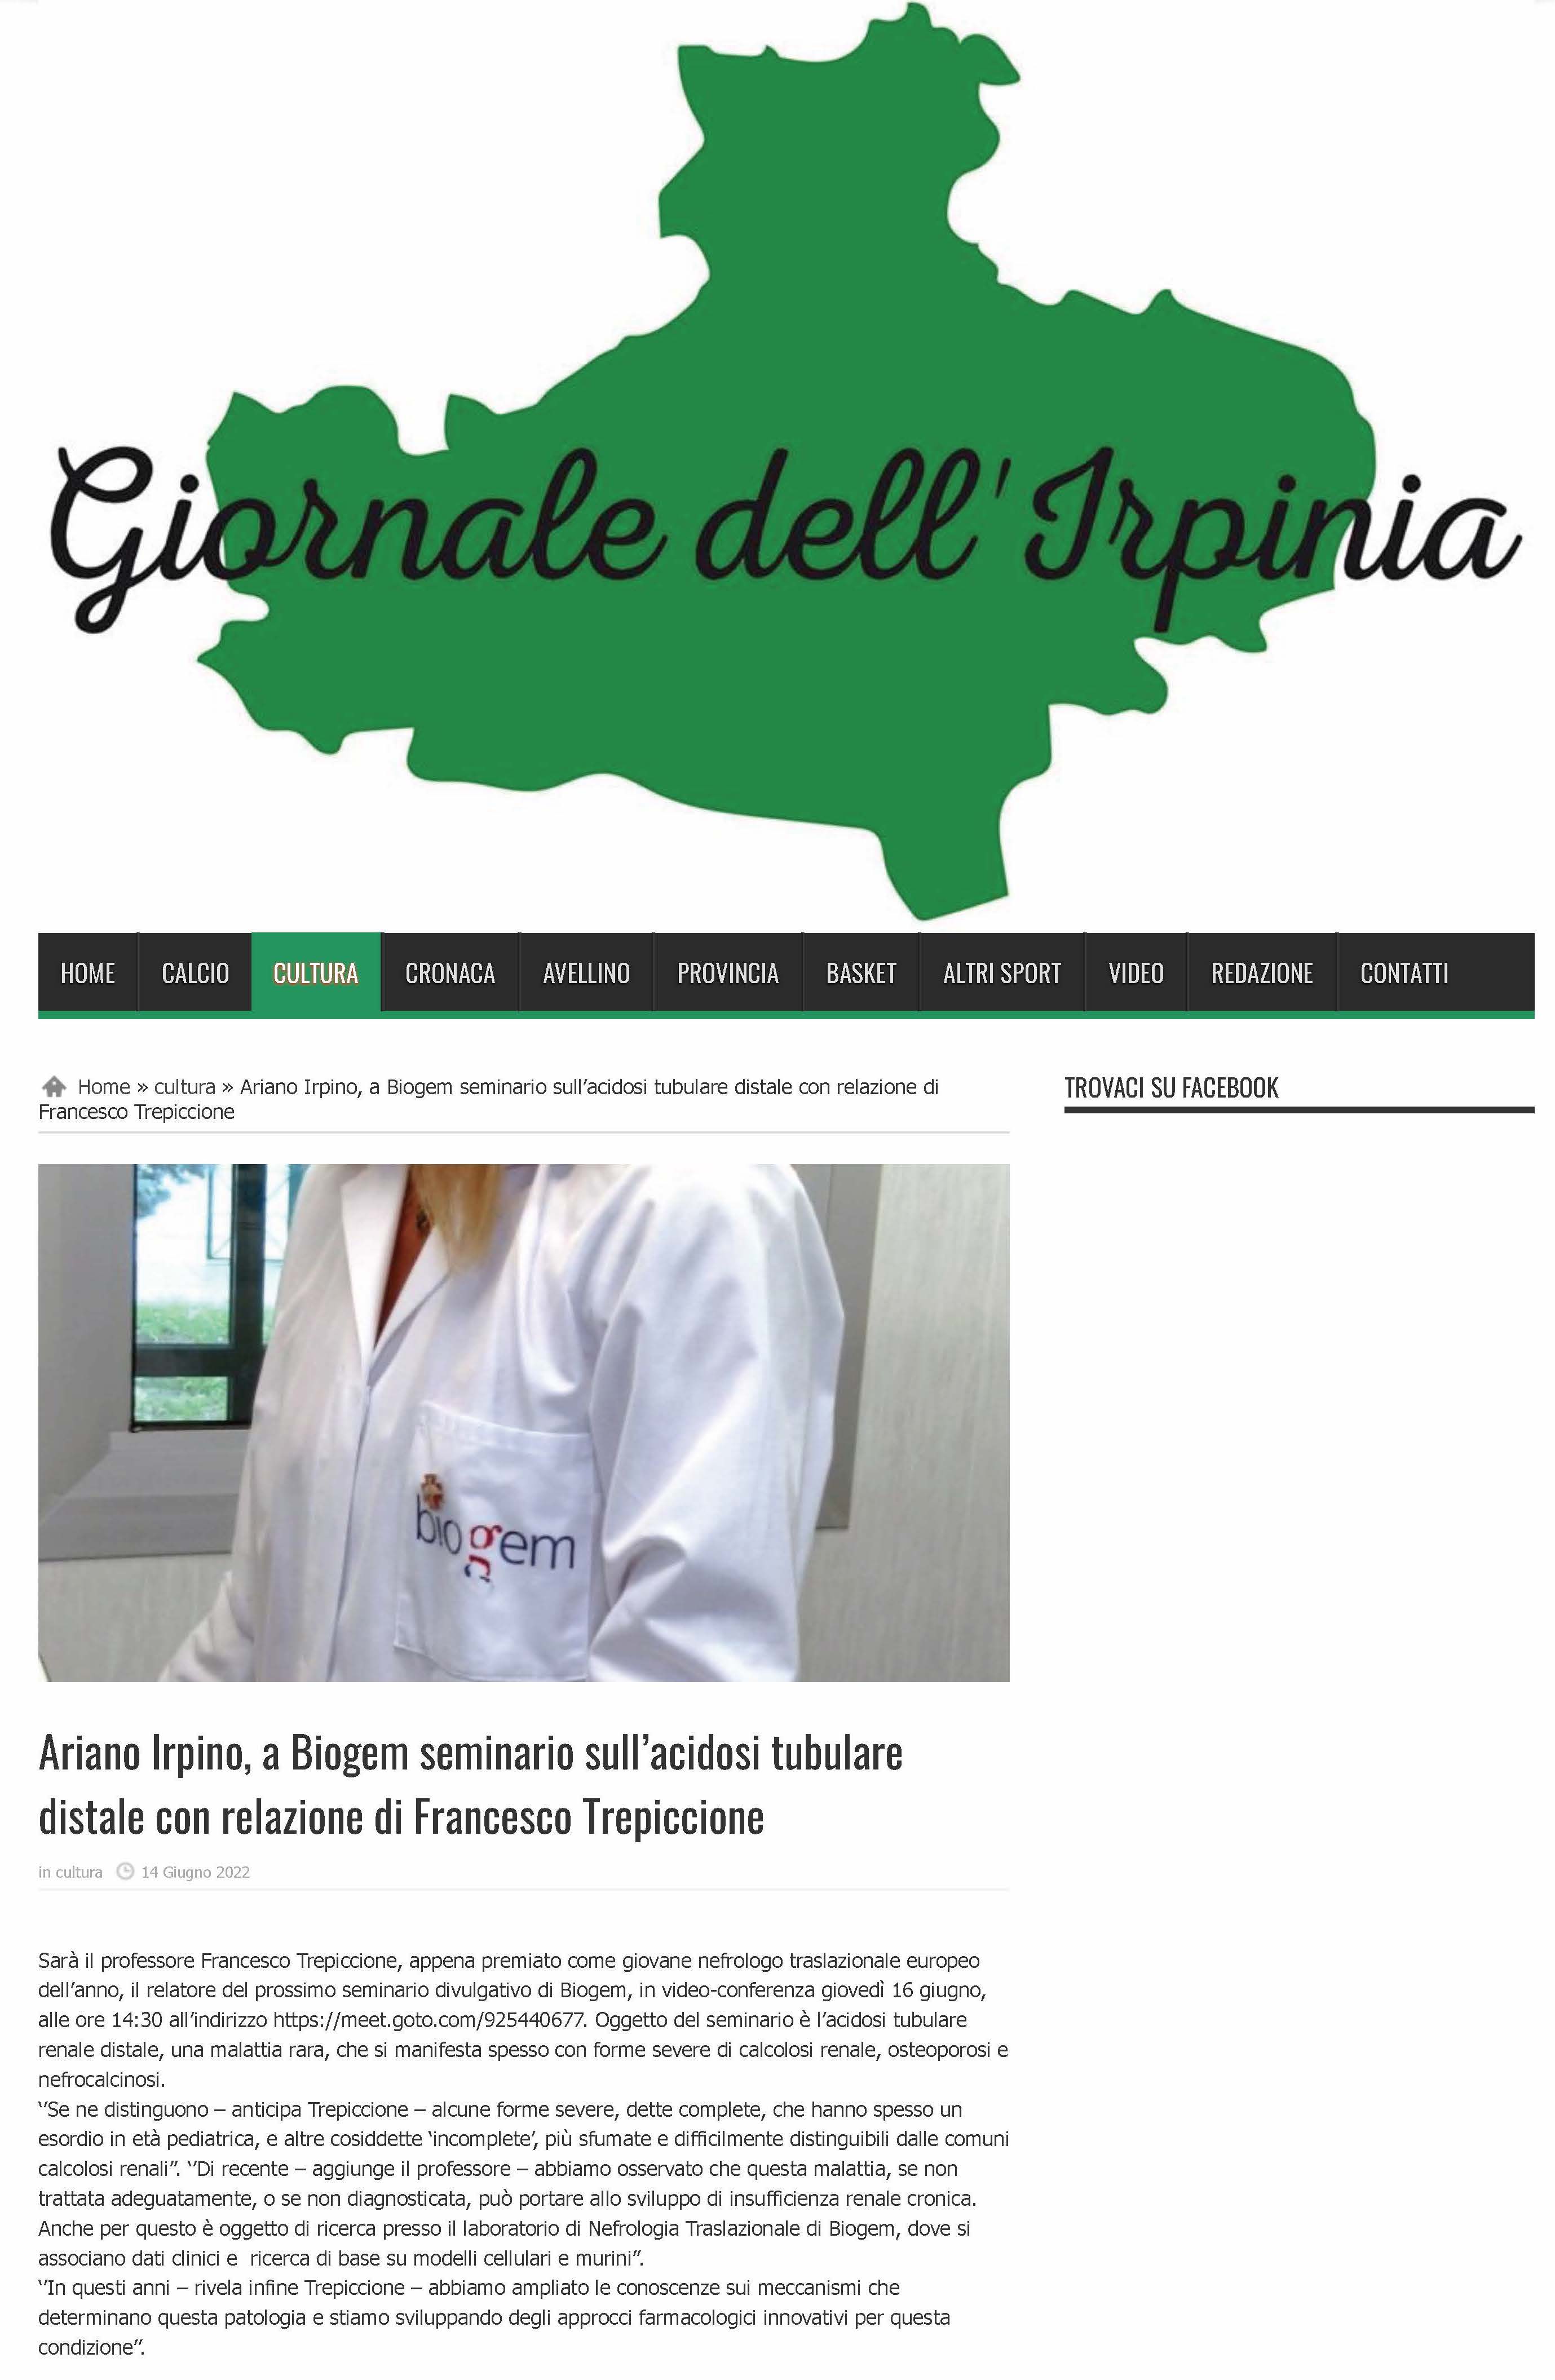 Ariano Irpino, a Biogem seminario sull’acidosi tubulare distale con relazione di Francesco Trepiccione